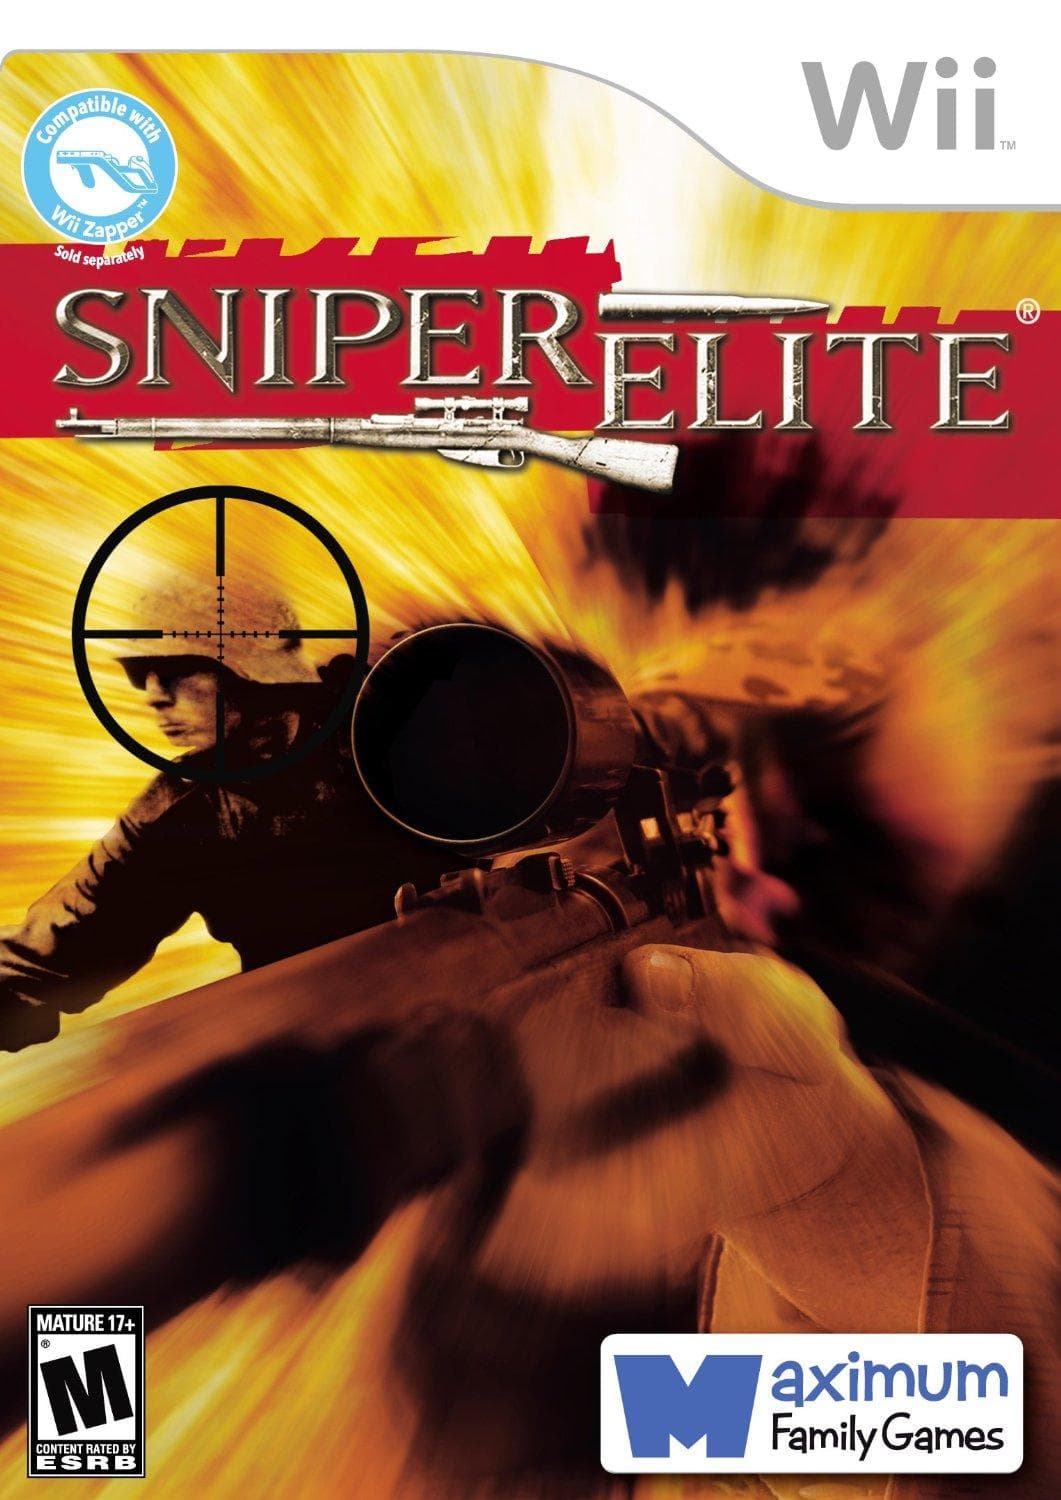 Sniper Elite for xbox 